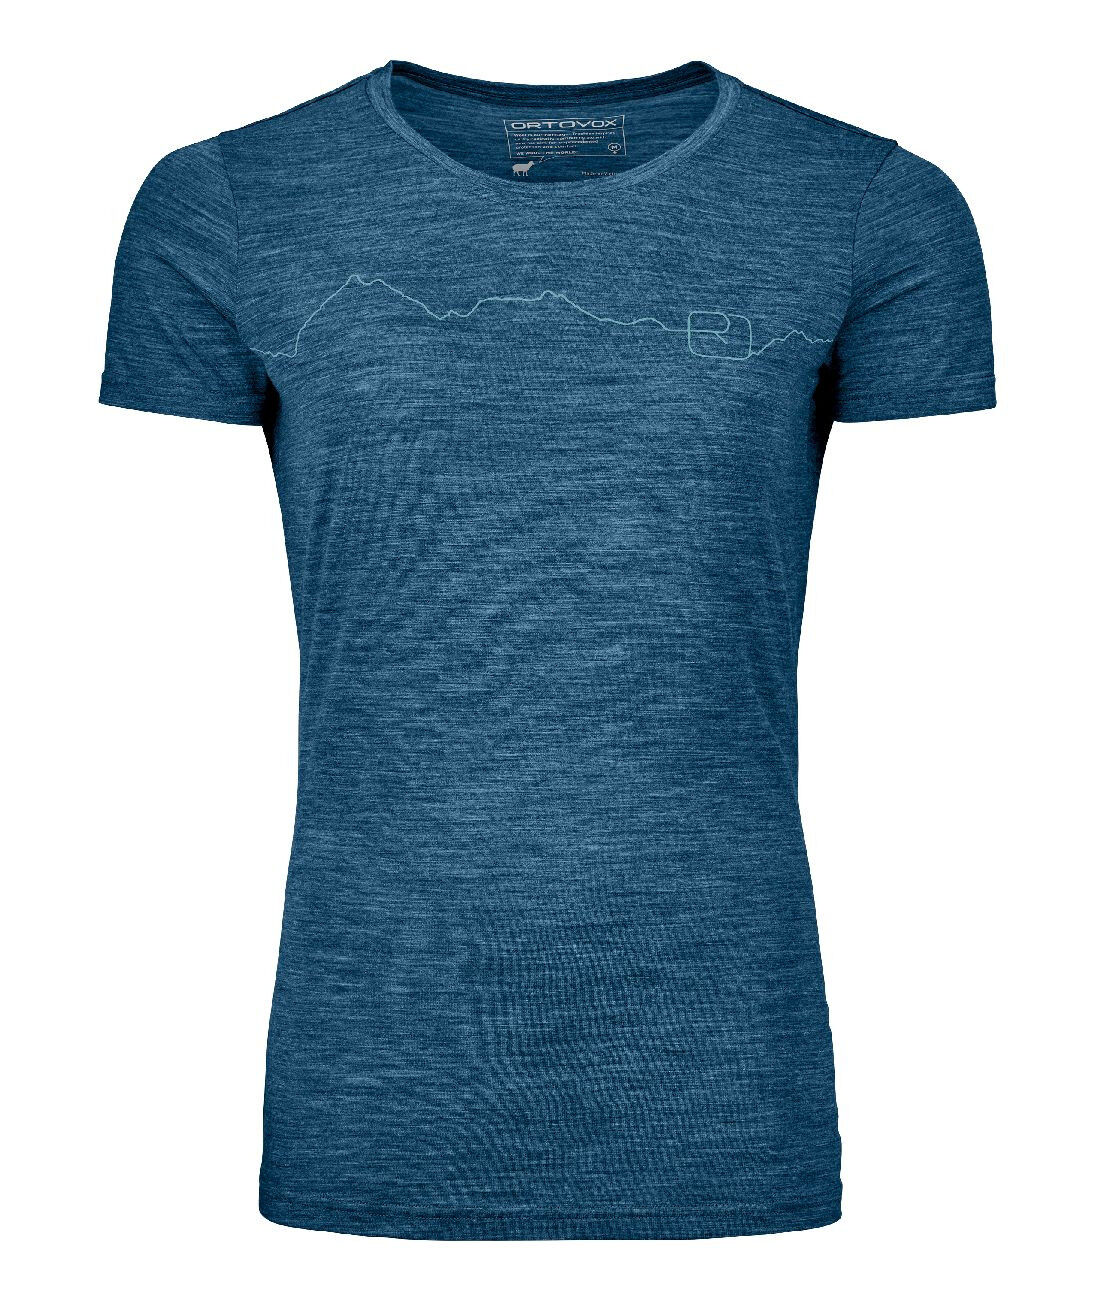 Ortovox 150 Cool Mountain TS - T-shirt - Women's